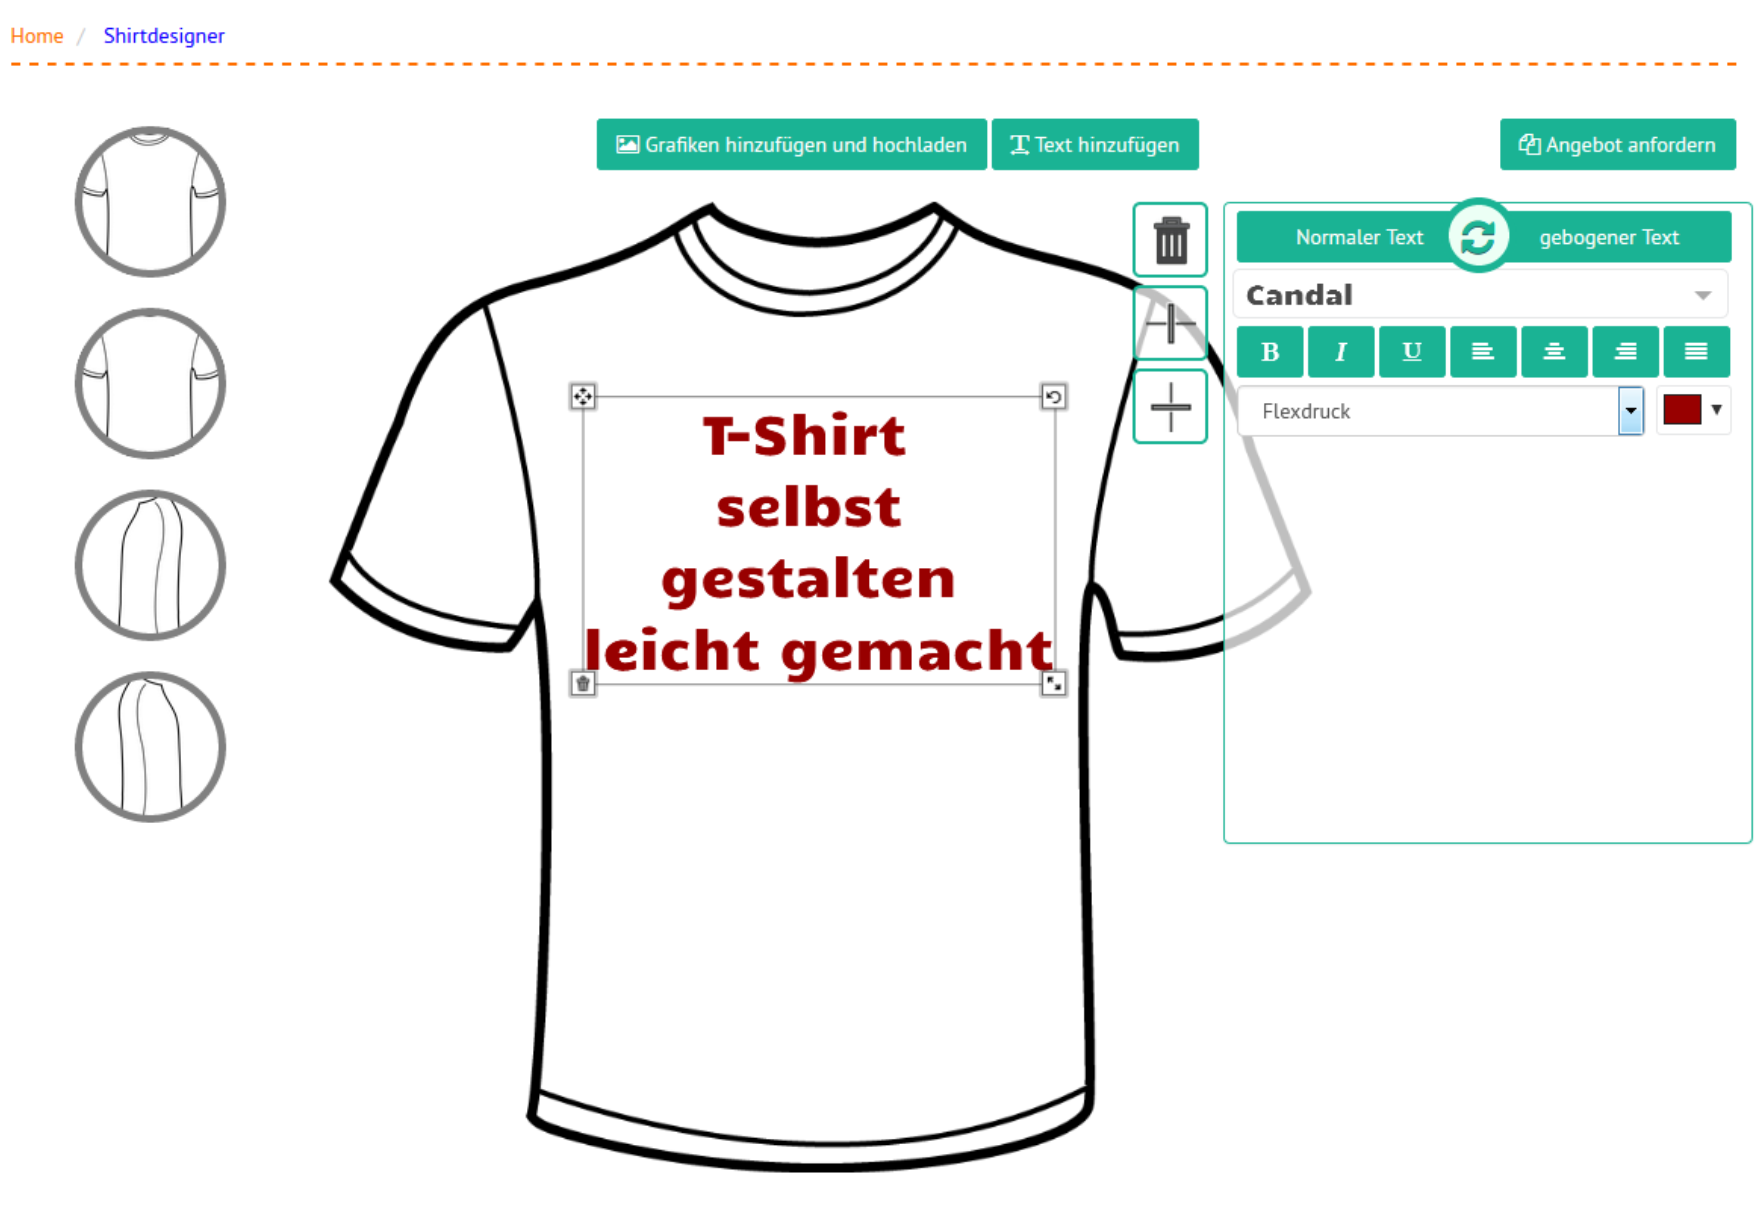 T Shirt gestalten und T Shirt bedrucken bei Ronny.de